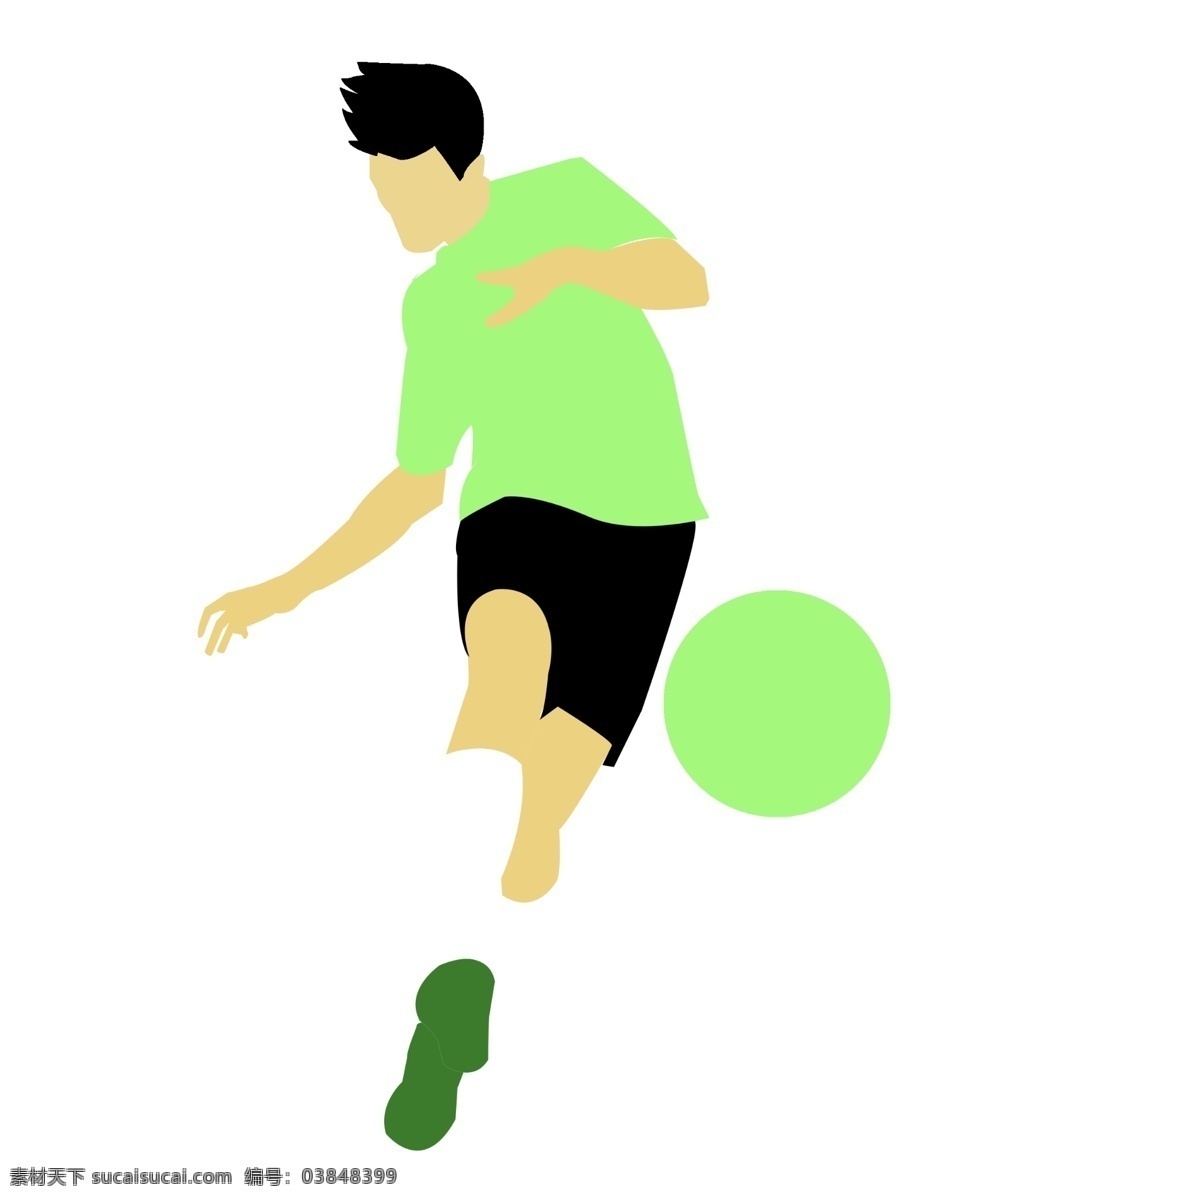 运动 人 主题 运动的人 爱足球爱健康 足球 踢 外国人 奔跑 踢足球的男人 爱运动爱健康